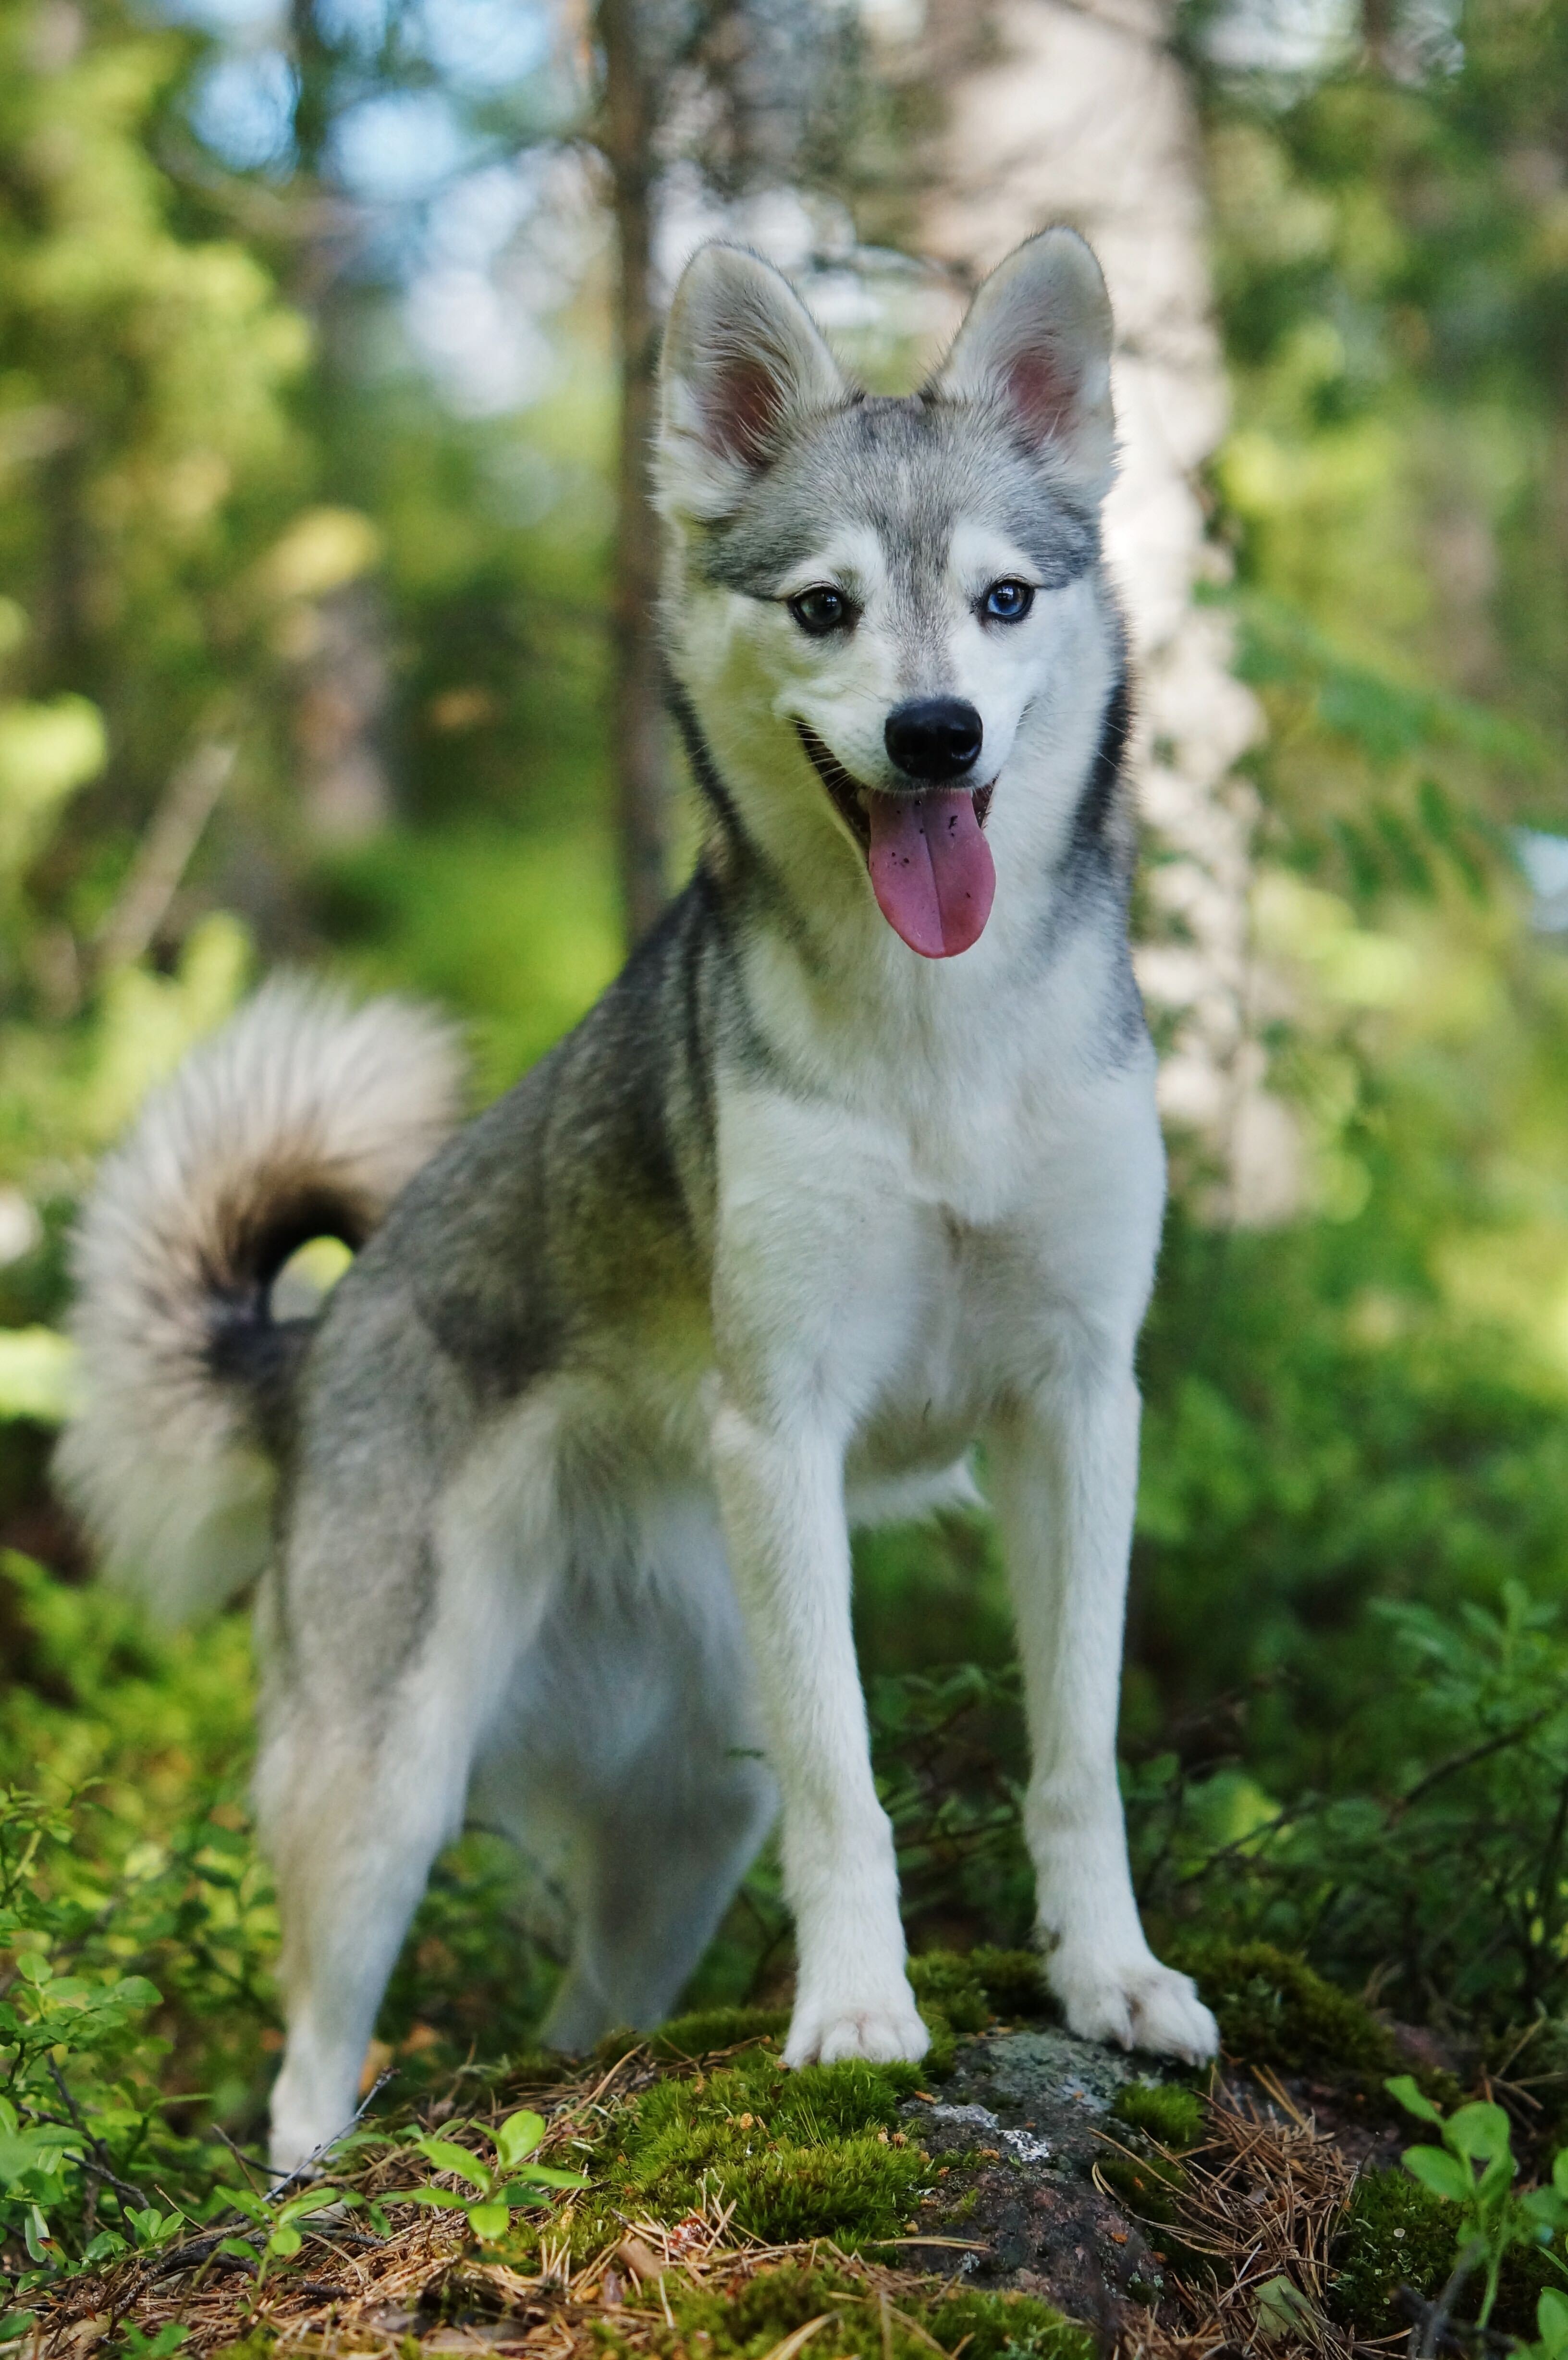 Alaskan Klee Kai : Choose best dog breeds for you (Paperback)